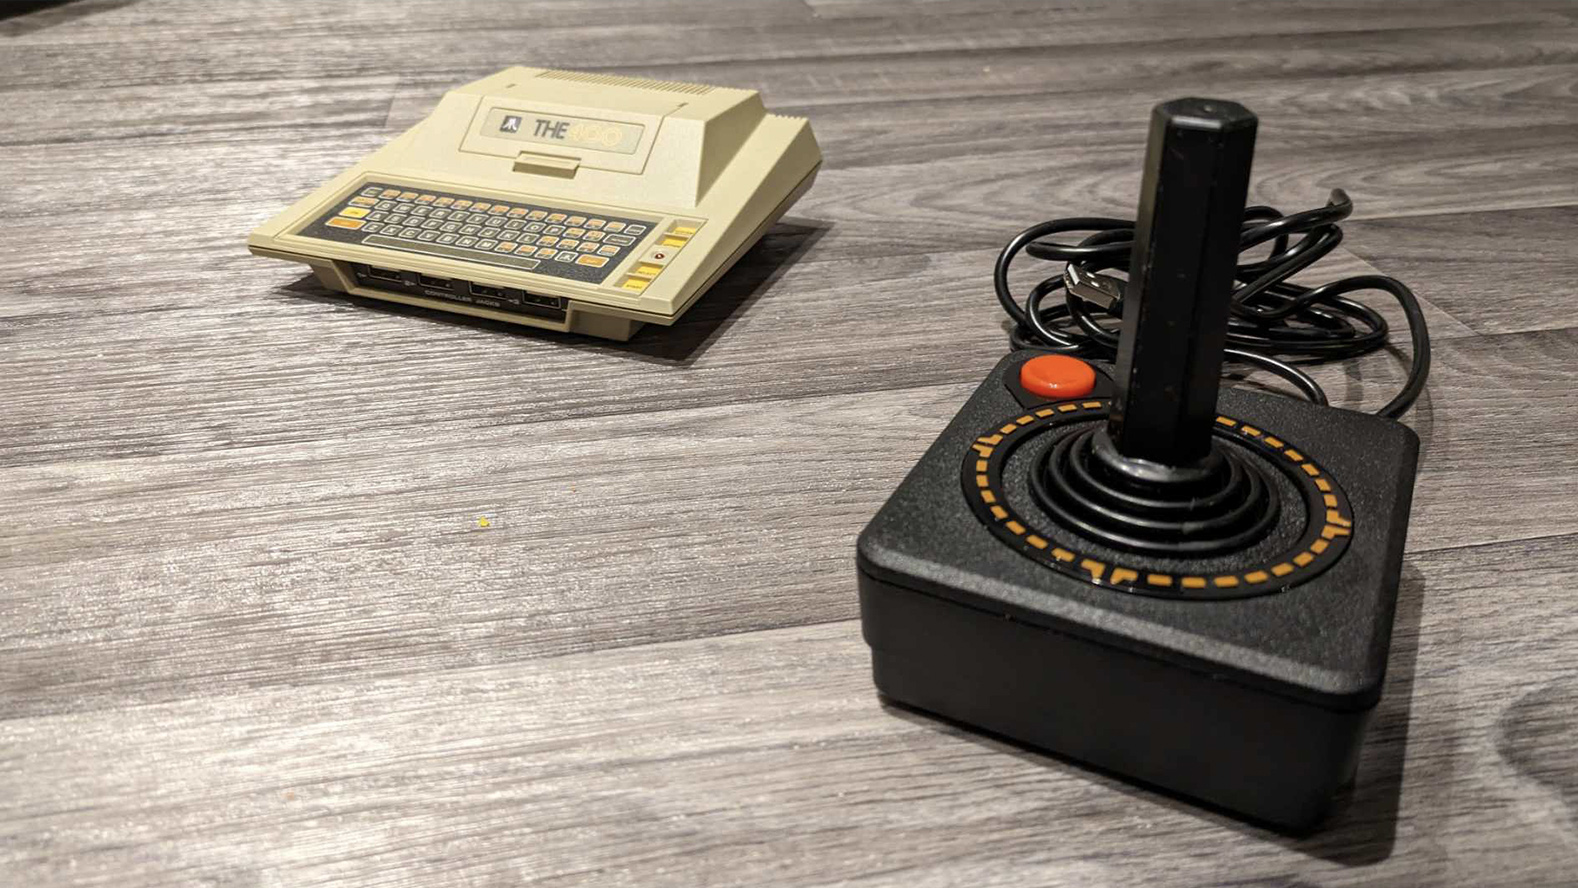 Atari 400 Mini review; a retro console and retro controller